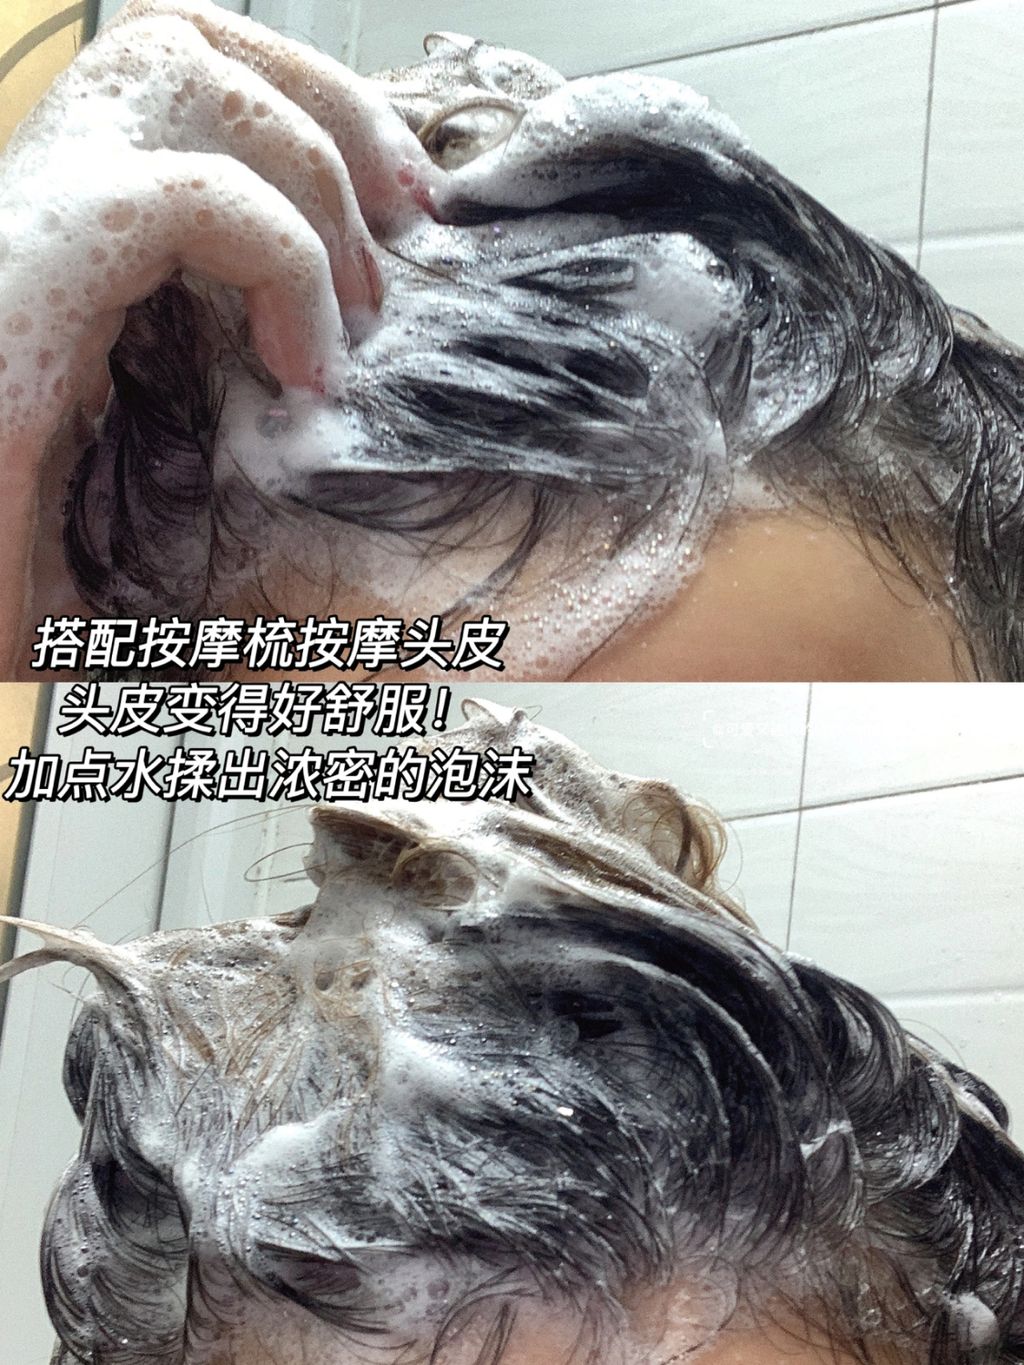 JuzBeauty_JuzBeautyMalaysia_JuzPretty_Authentic_Kbeauty_Malaysia_Jbeauty_RNW_Der_Hair_Care_Hair-Puffy_Cleanser_With_Sea_Salt_ (8).jpg